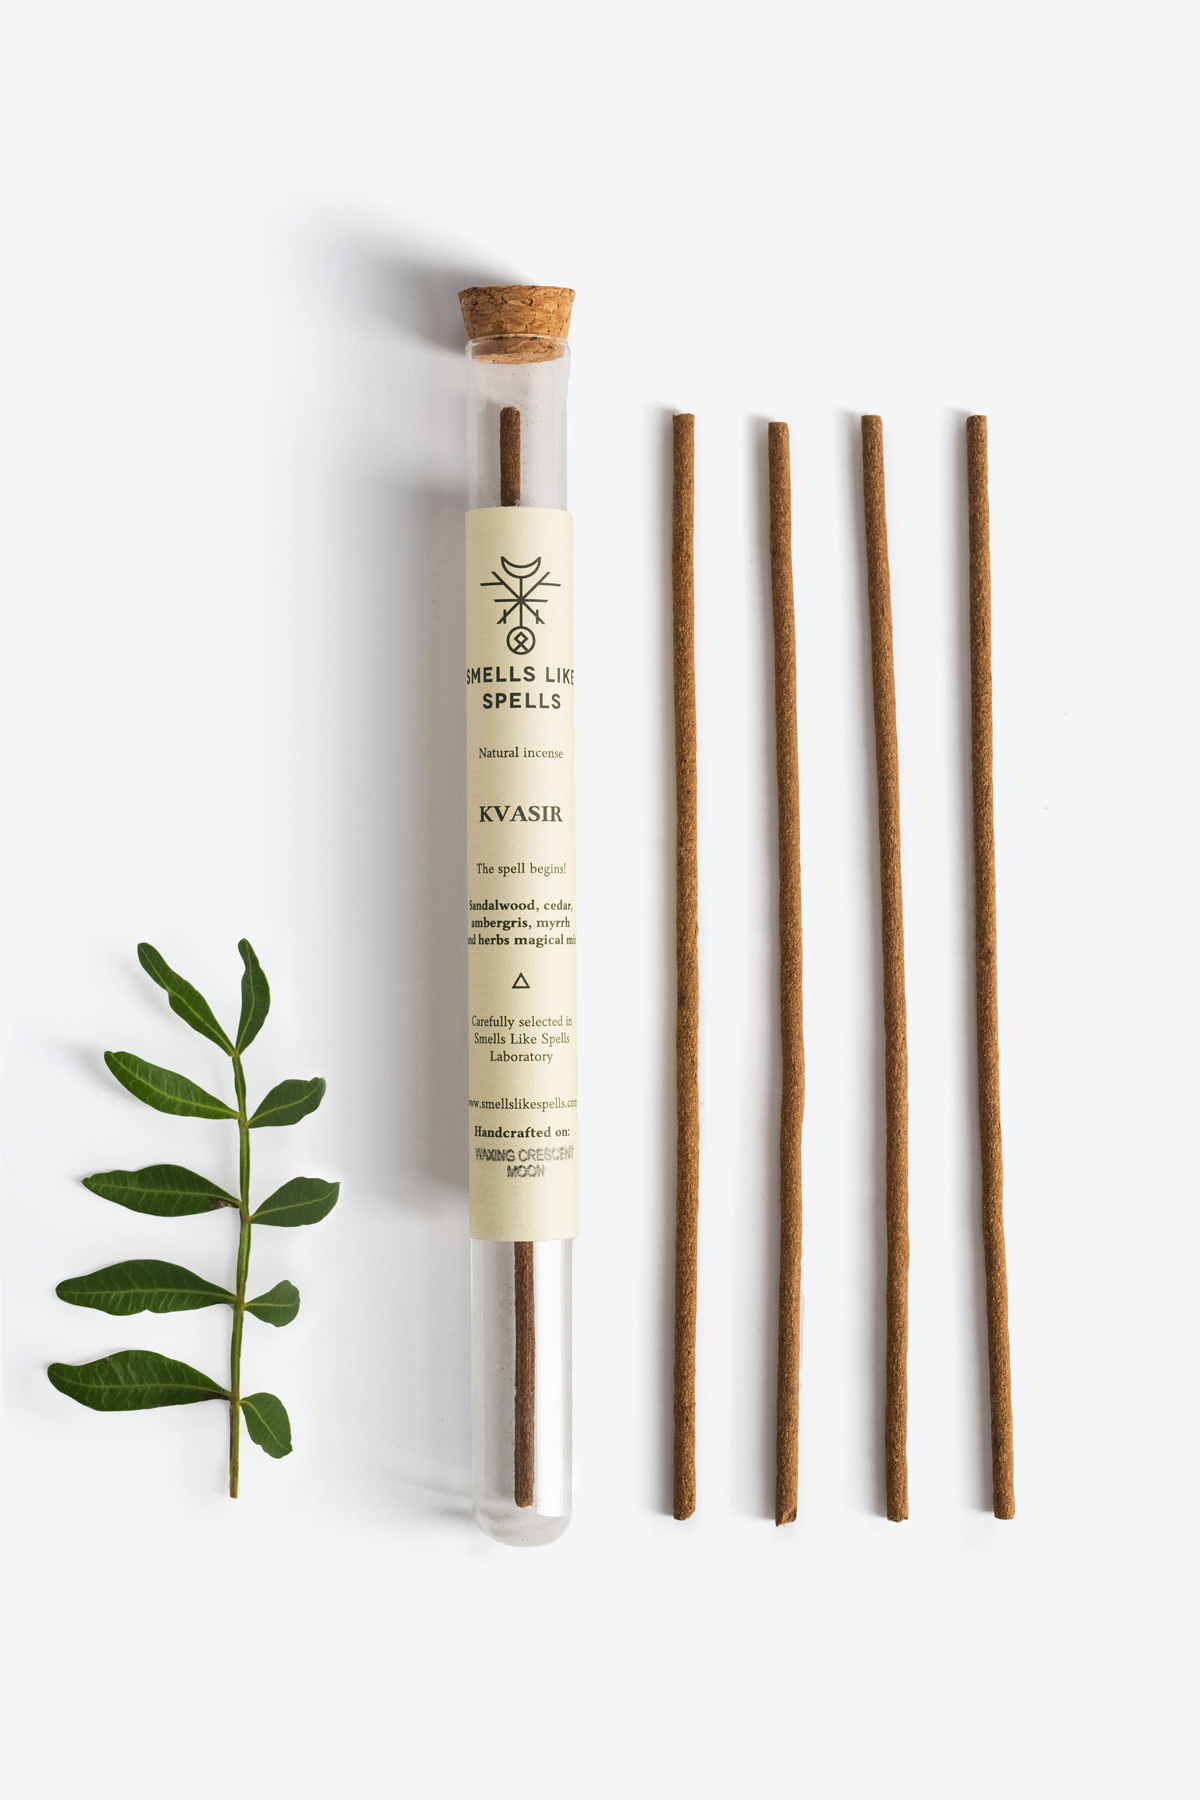 Natural incense KVASIR Smells Like Spells